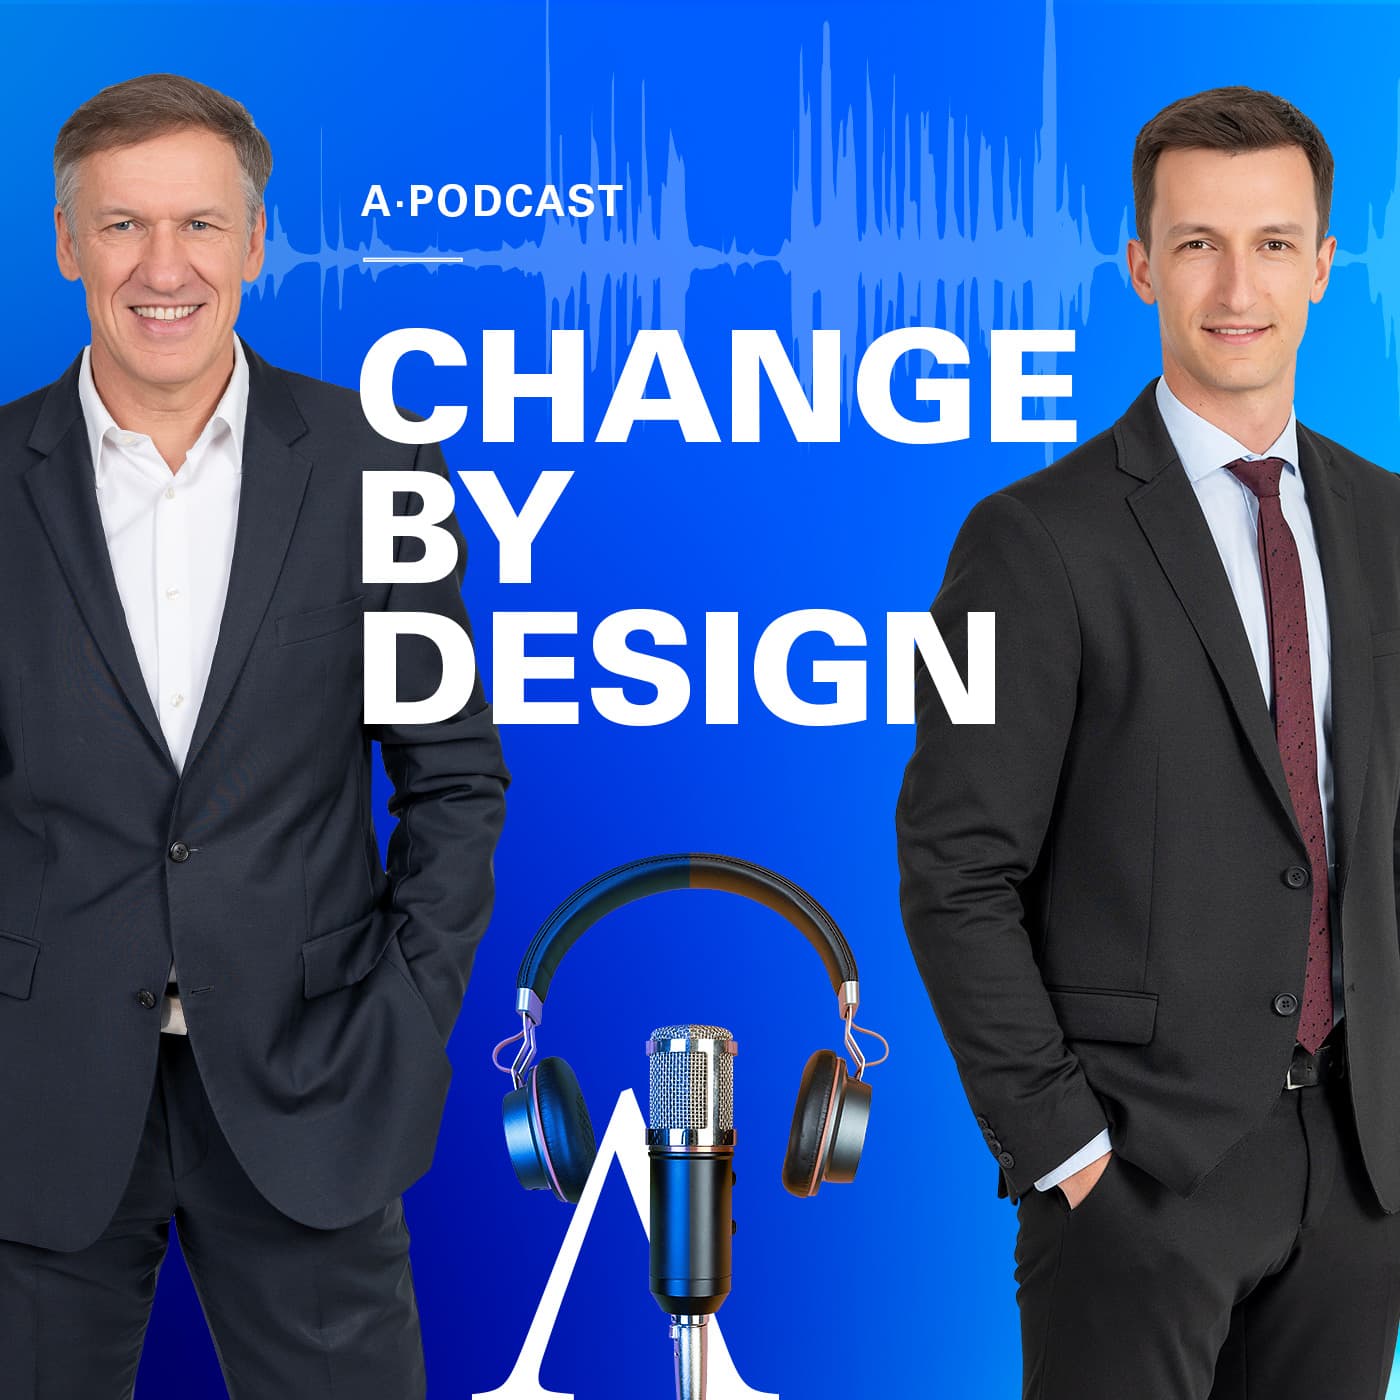 Vorschau - Behind the C & Change by Design